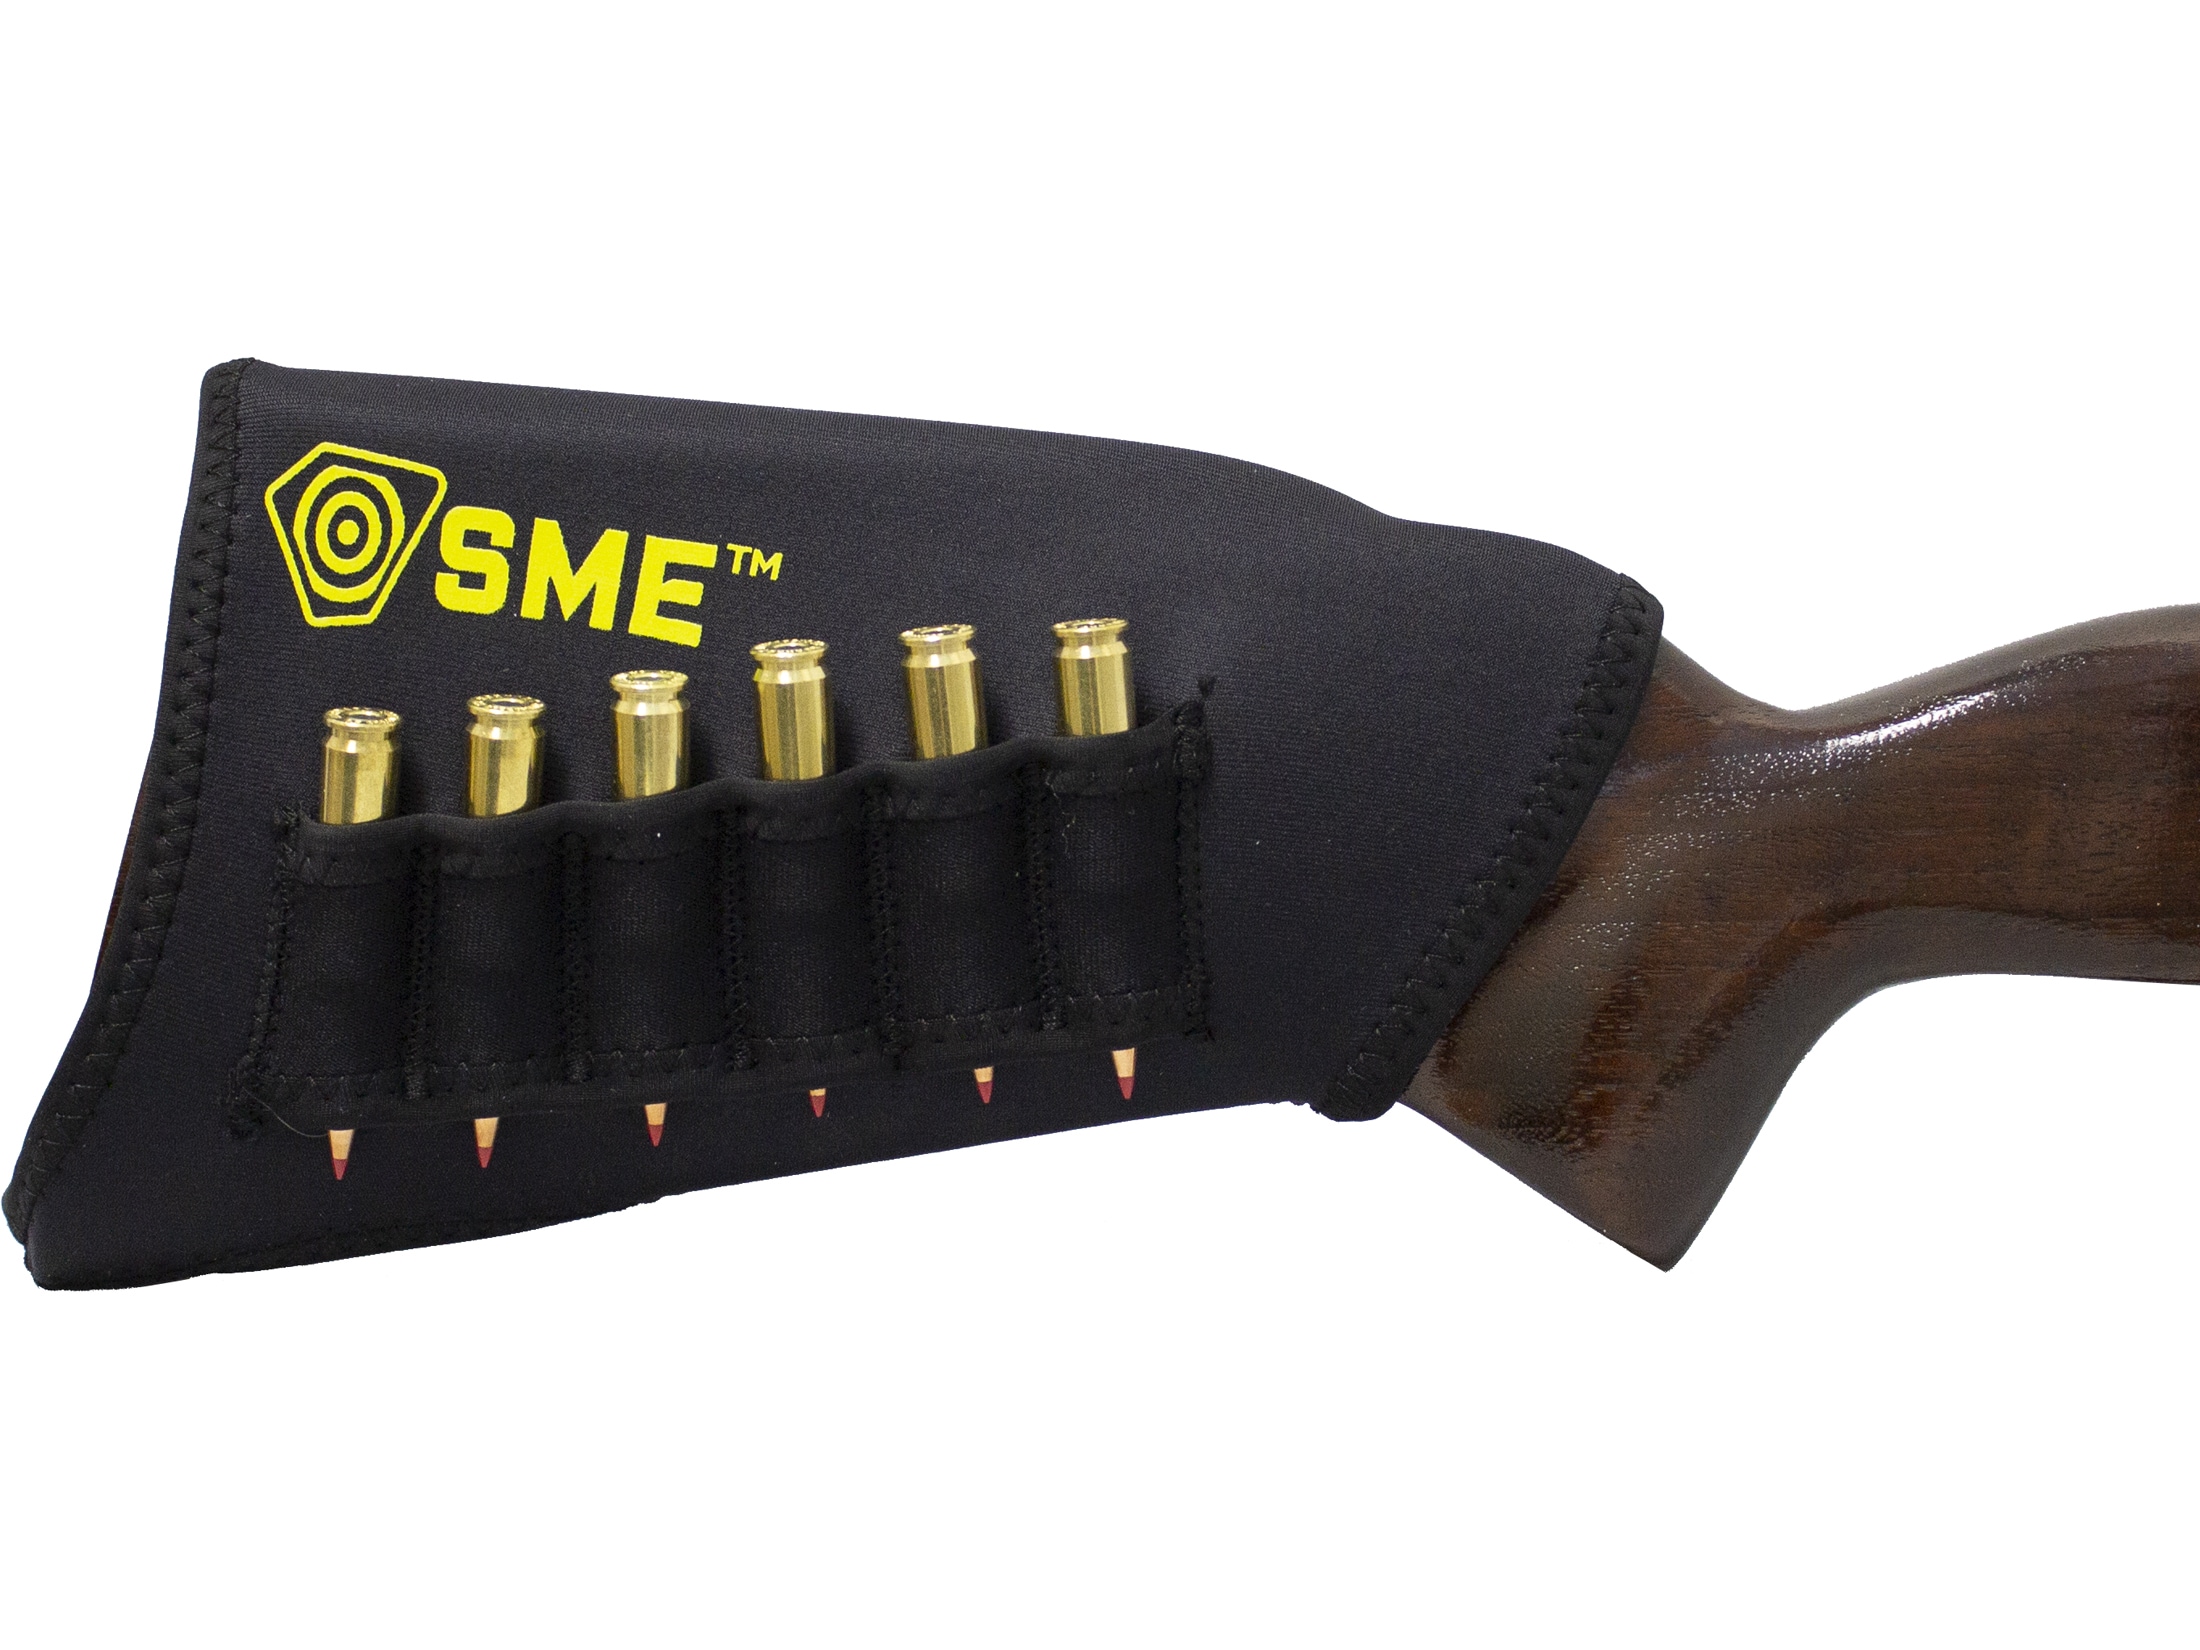 Beretta Shotgun Gel-tek Comb Raiser/Cheek Protector Pad for Clay Pigeon or Game 